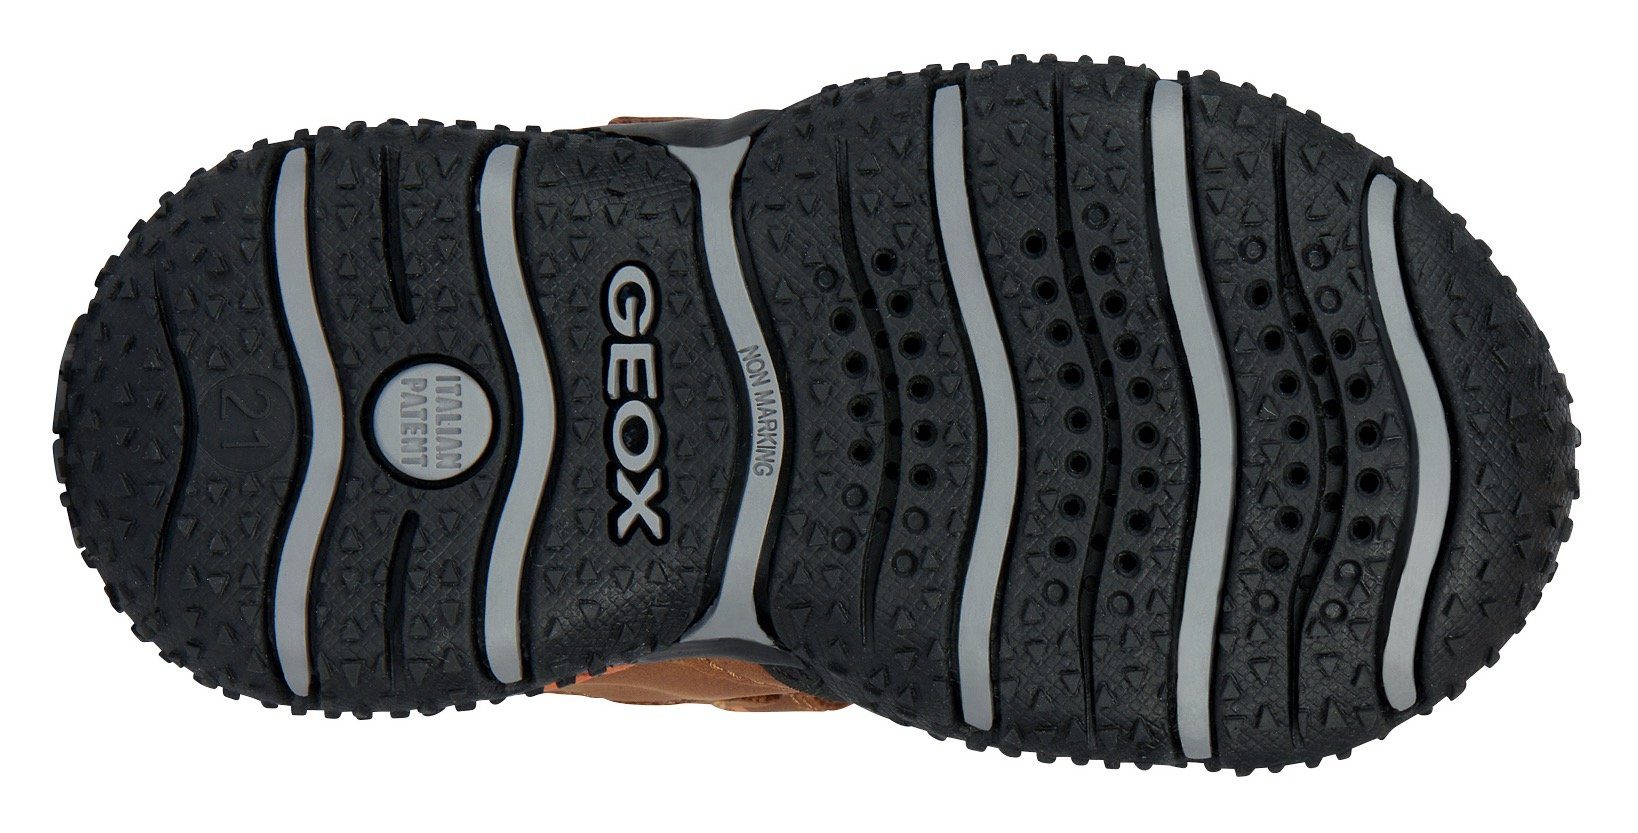 TEX-Ausstattung mit Geox Lauflernschuh B ABX BALTIC B braun-schwarz-orange BOY